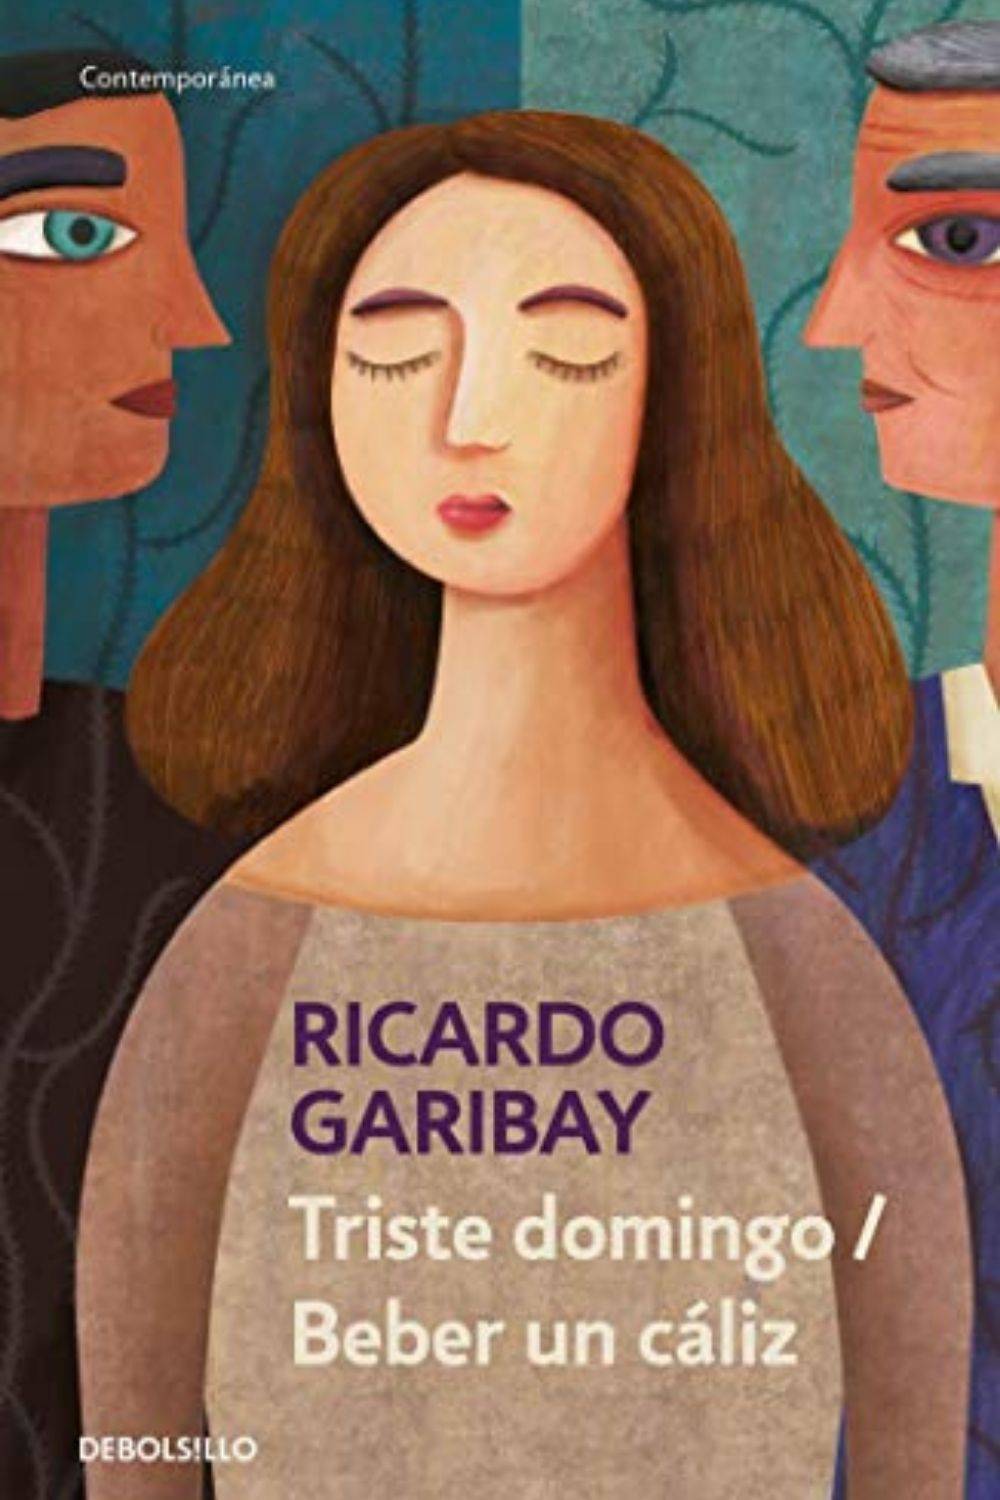 ‘Beber un cáliz’ de Ricardo Garibay